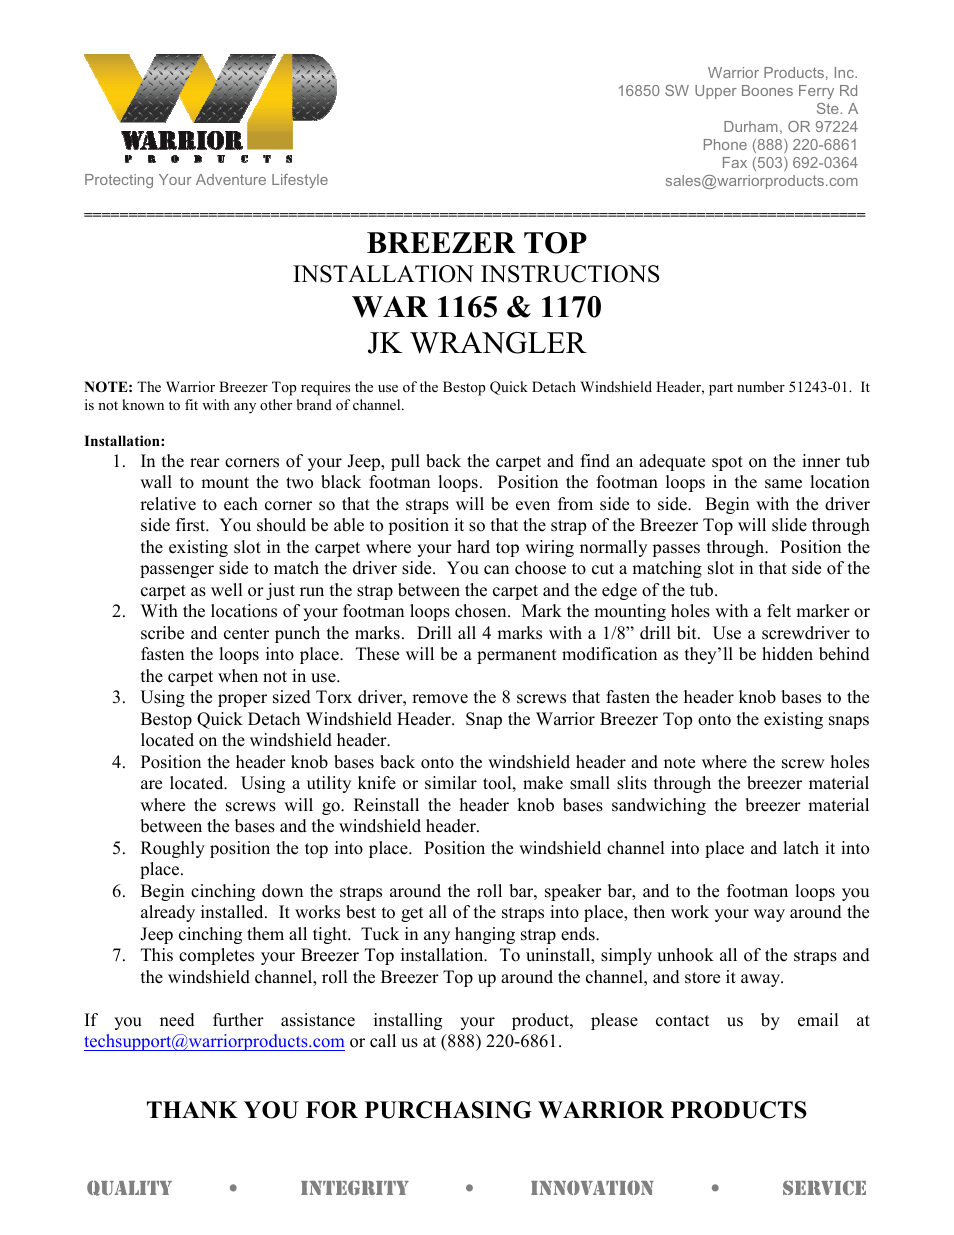 1170 BREEZER TOP (2007 – 2013 Jeep JK Wrangler)